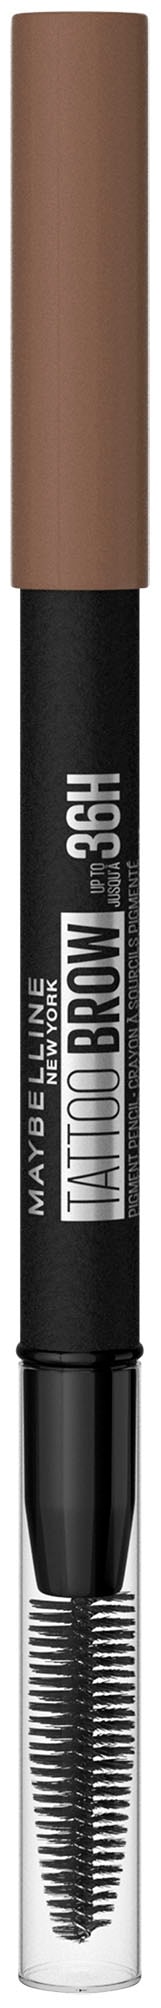 MAYBELLINE NEW YORK Augenbrauen-Stift »Tattoo Brow 36H«, mit Bürste, wasserfeste Formel, Augen-Make-Up